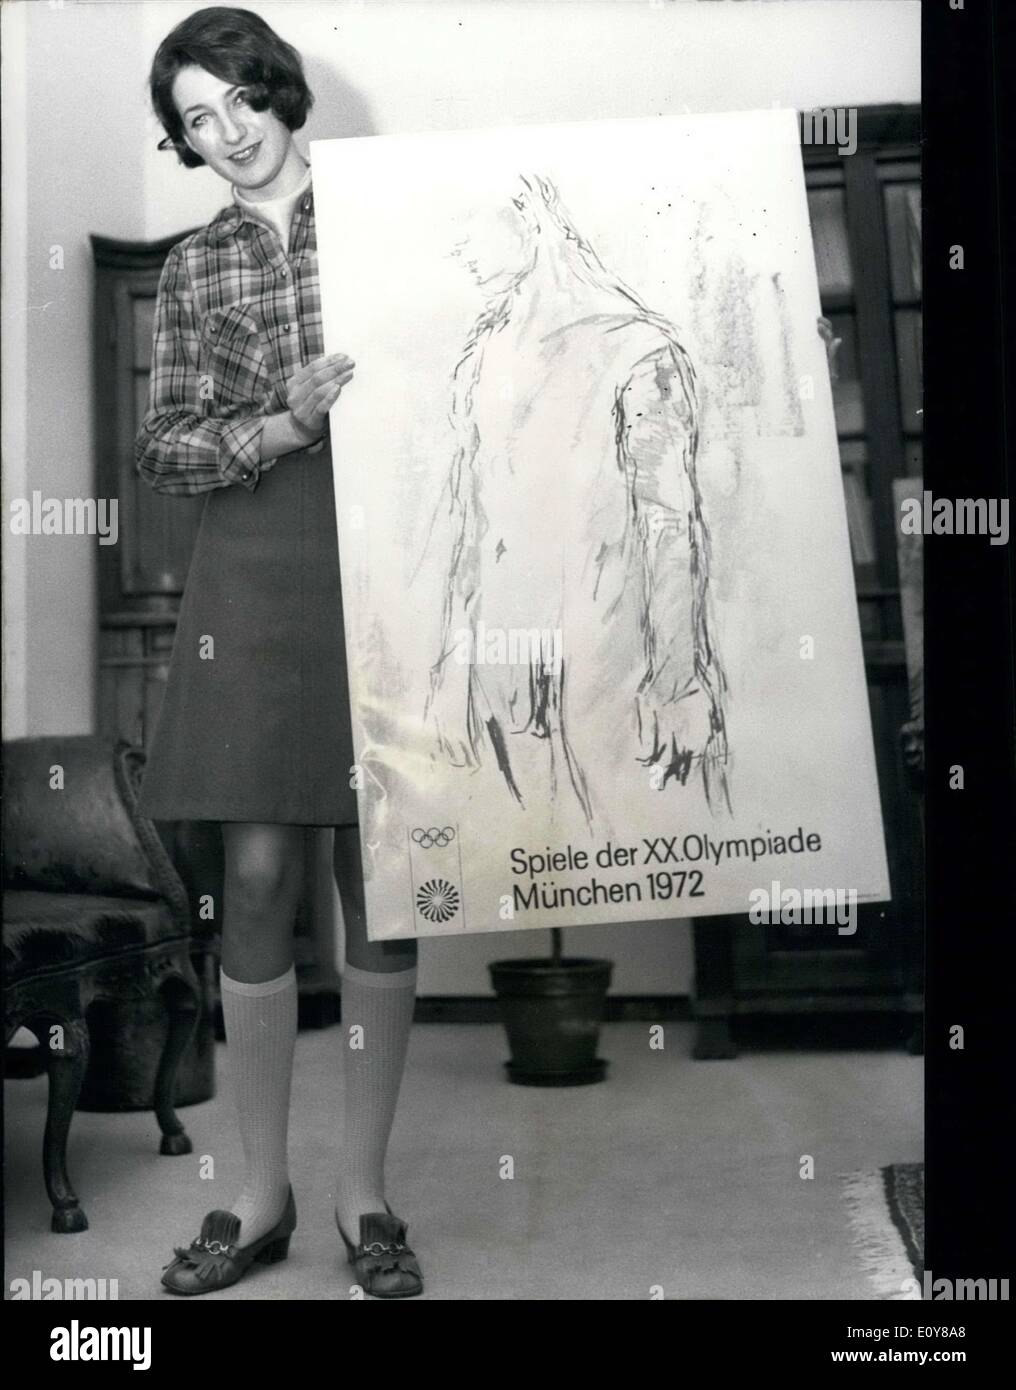 31. Januar 1969 - war die erste offizielle olympische-Plakat für die Spiele von München, anlässlich des Besuchs von IOC-Präsident Avery Brundage, Geltung. Der Künstler ist Oskar Kokoschka. Er zeigt eine griechische Jugend, aber es gibt Hinweise von Weiblichkeit in der Kunst. Dies ist Kokoschkas erste Arbeit mit Serigraphien. Stockfoto